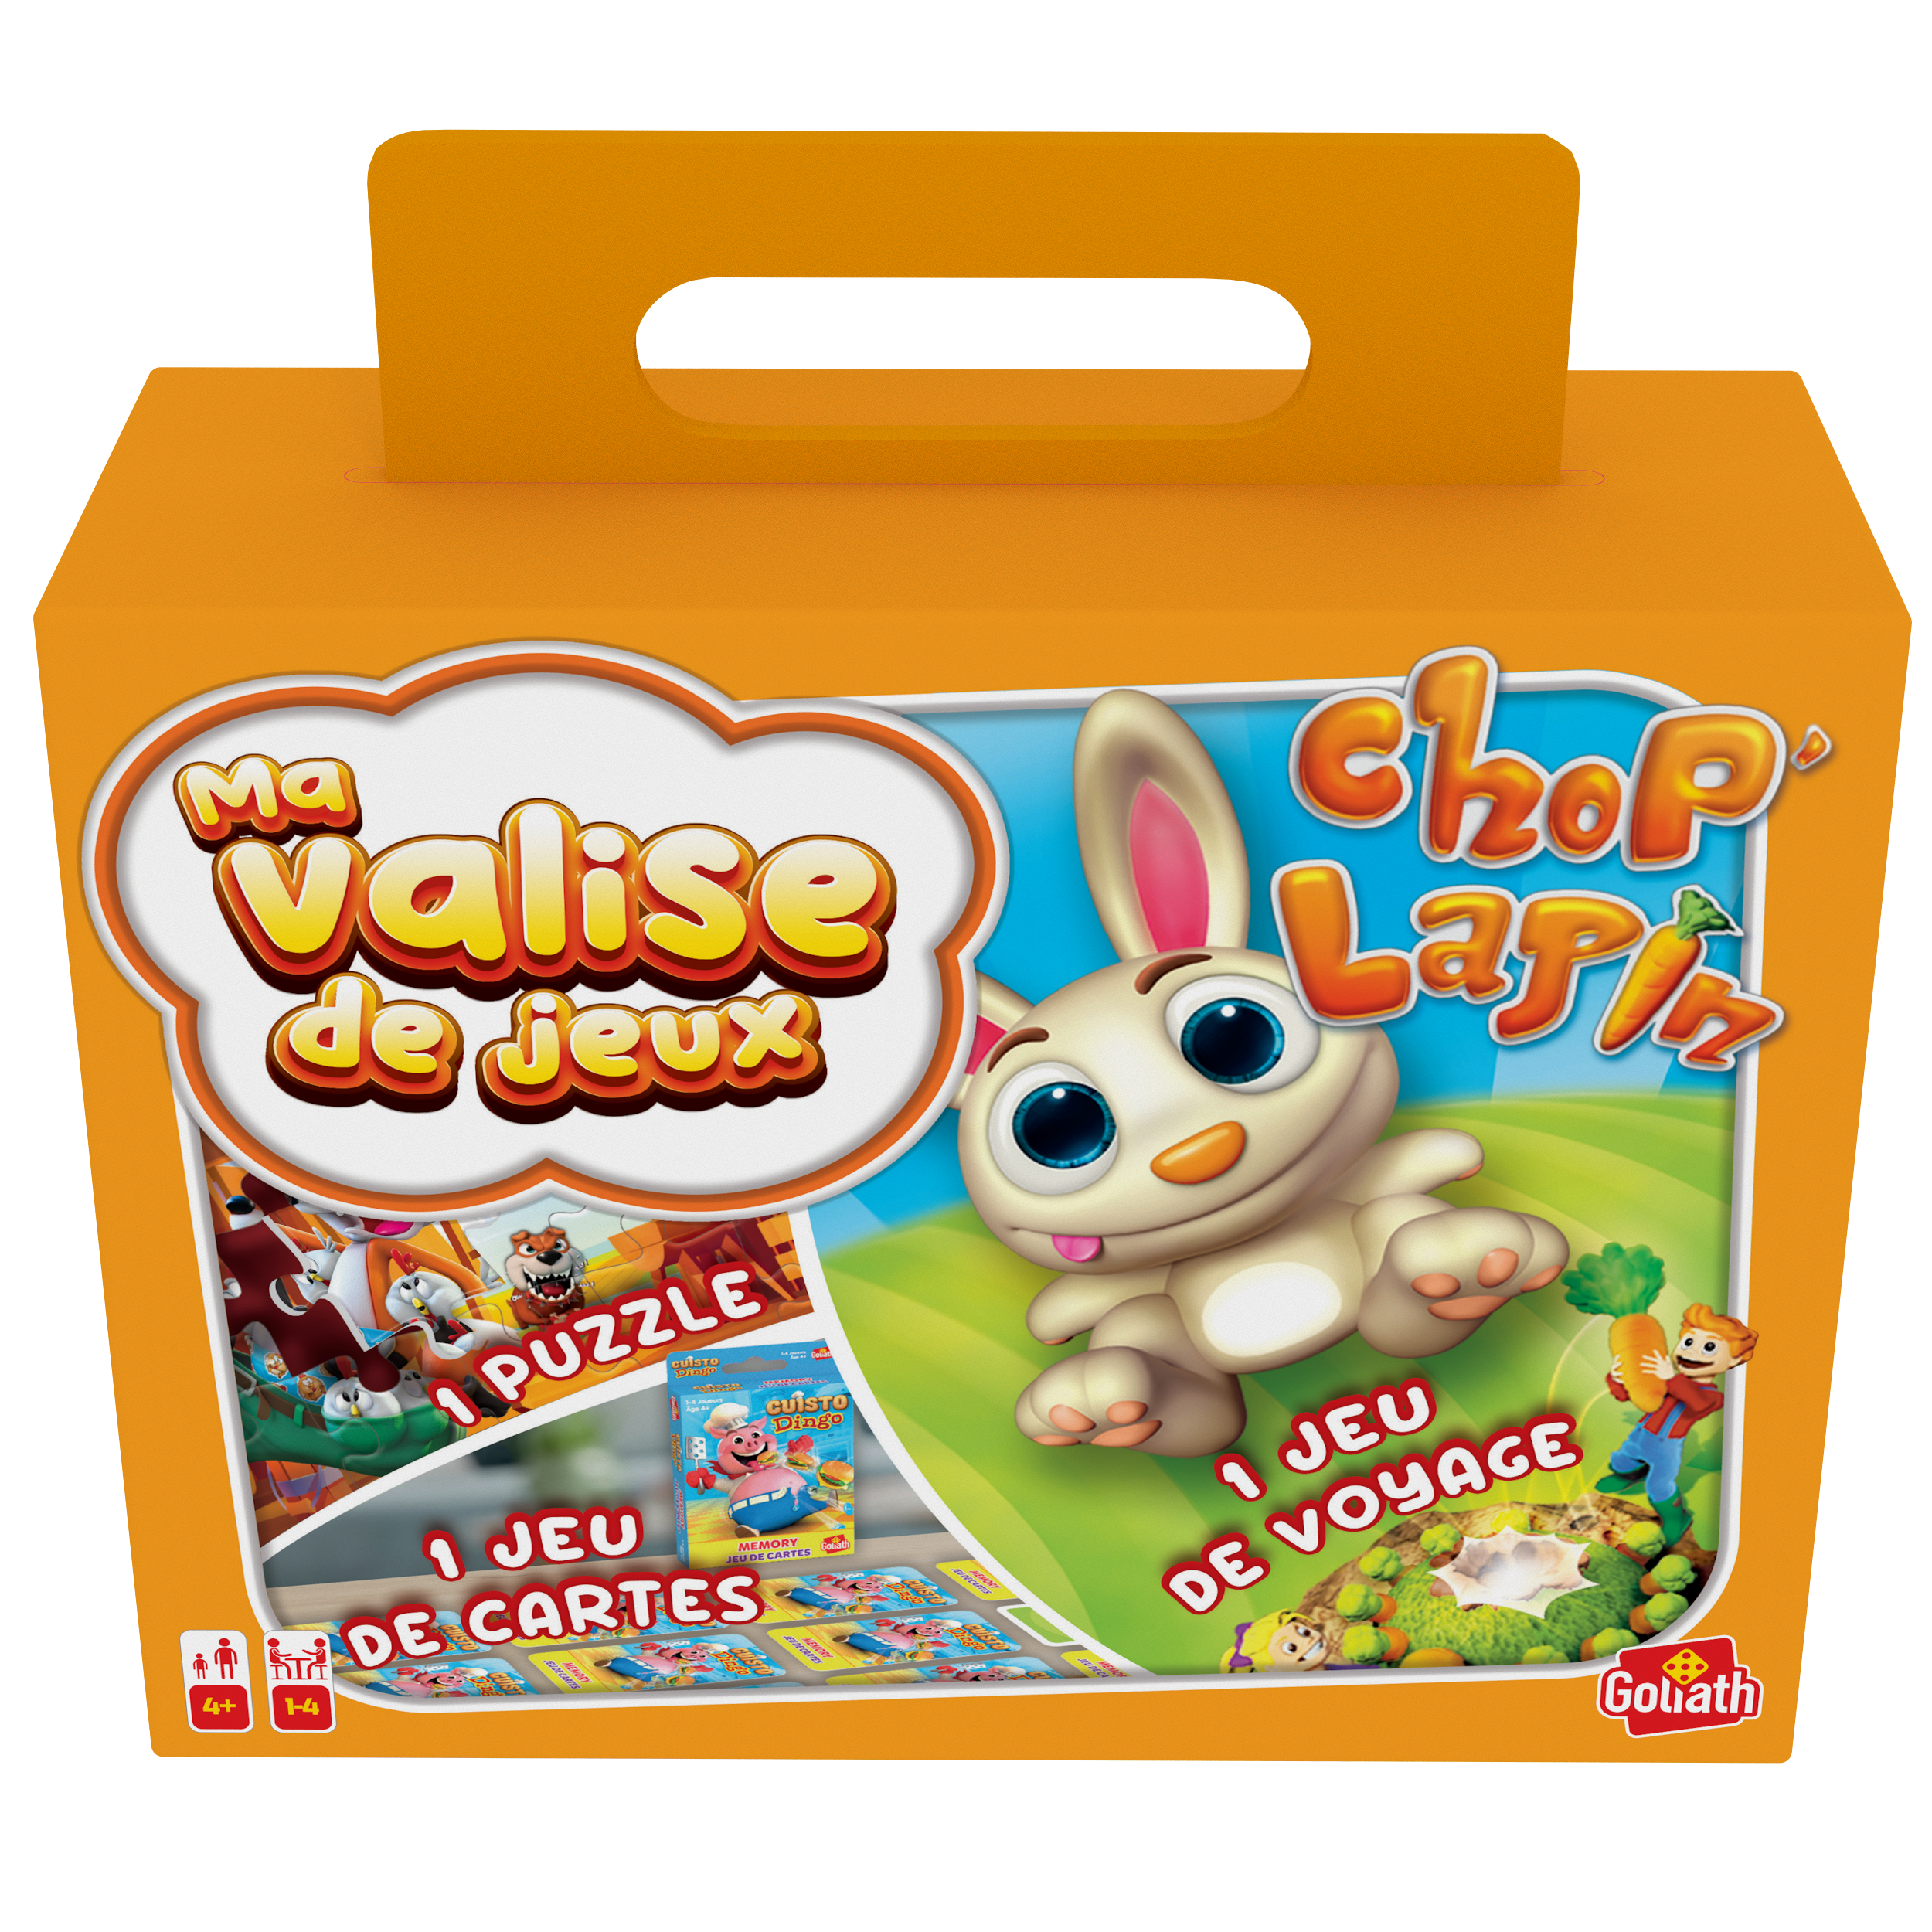 Goliath - Cuisto Dingo - Jeux d'enfants - à partir de 4 ans